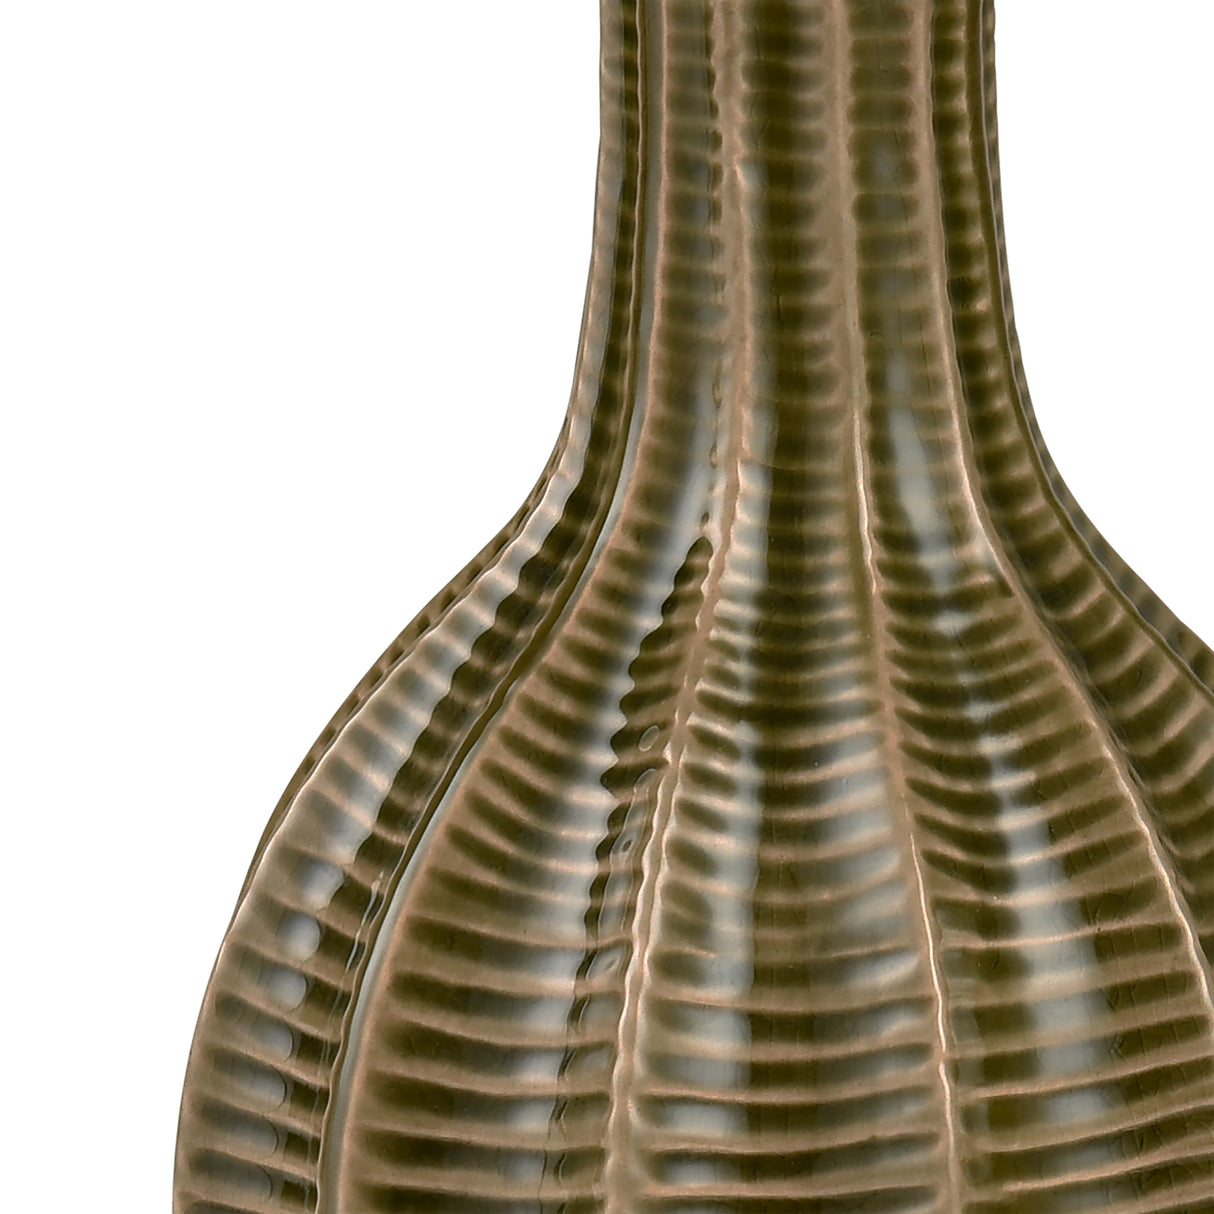 Elk S0017-9199 Collier Vase - Large